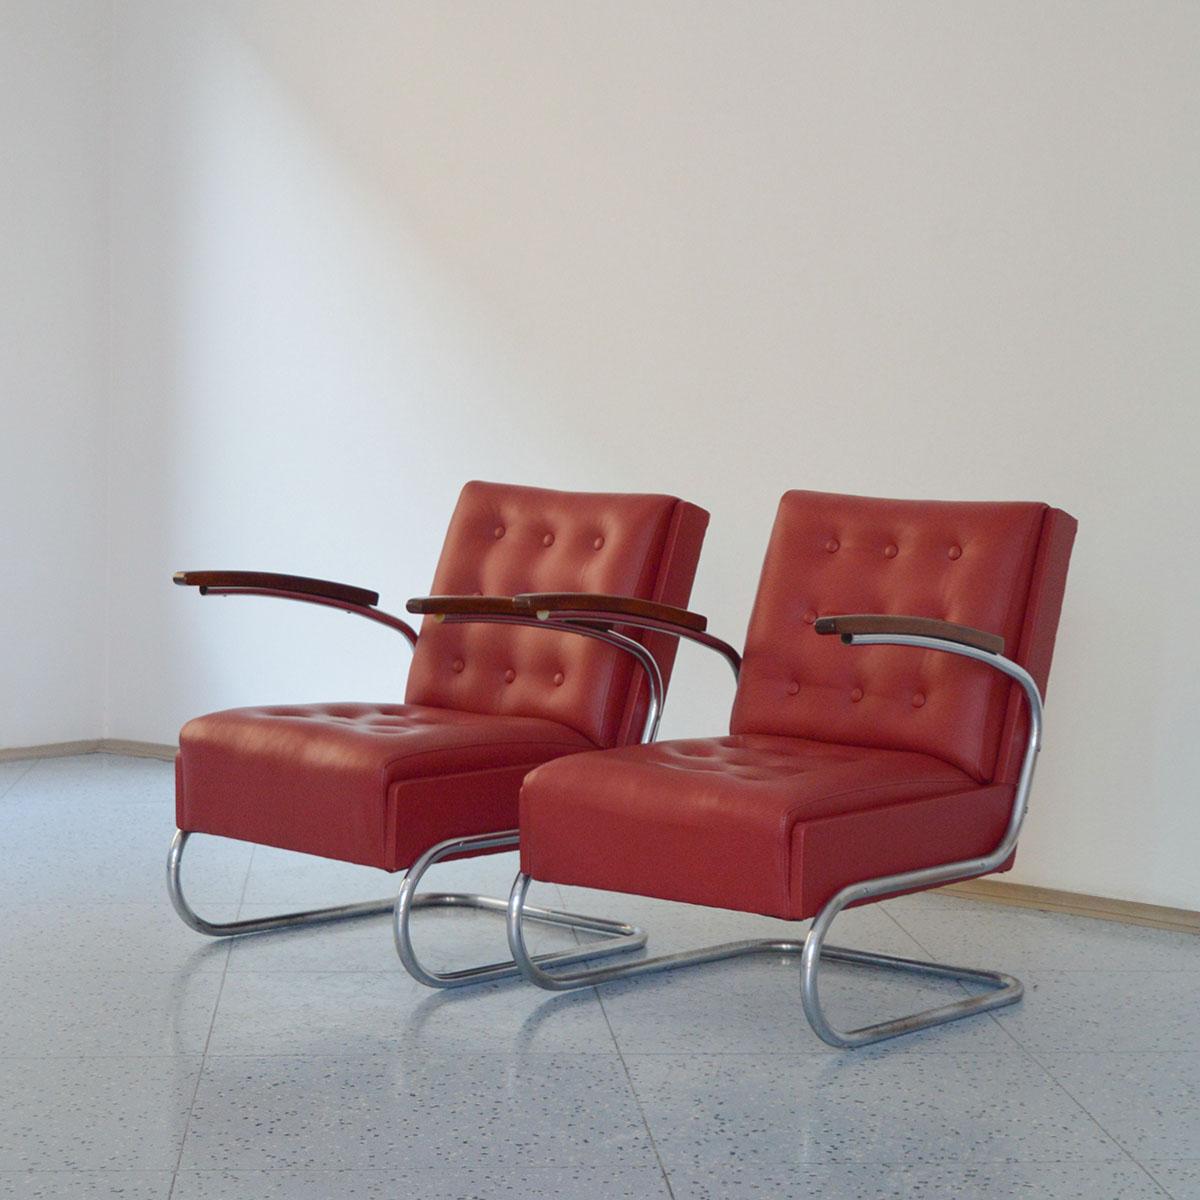 Paire de fauteuils cantilever Bauhaus en cuir en tube d'acier chromé, modèle S411, conçus par le designer industriel néerlandais Willem Hendrik Gispen et fabriqués par Mücke & Melder en Allemagne, années 1930.

L'iconique fauteuil cantilever S411